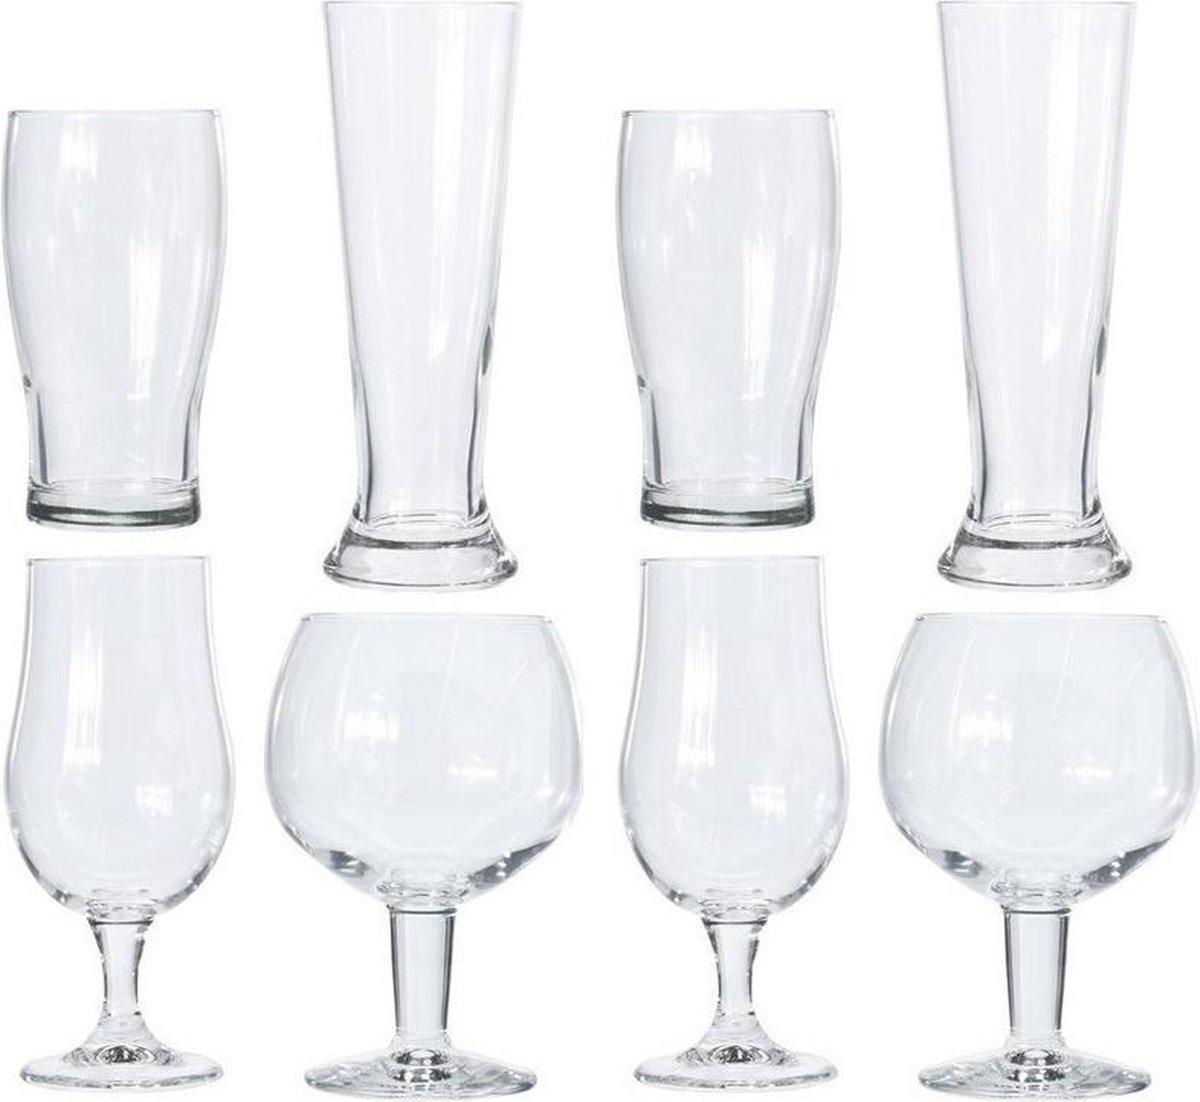 Verschillende bierglazen set 8 stuks - Glazen voor bier - Speciaal bier - Proefglazen set - Merkloos